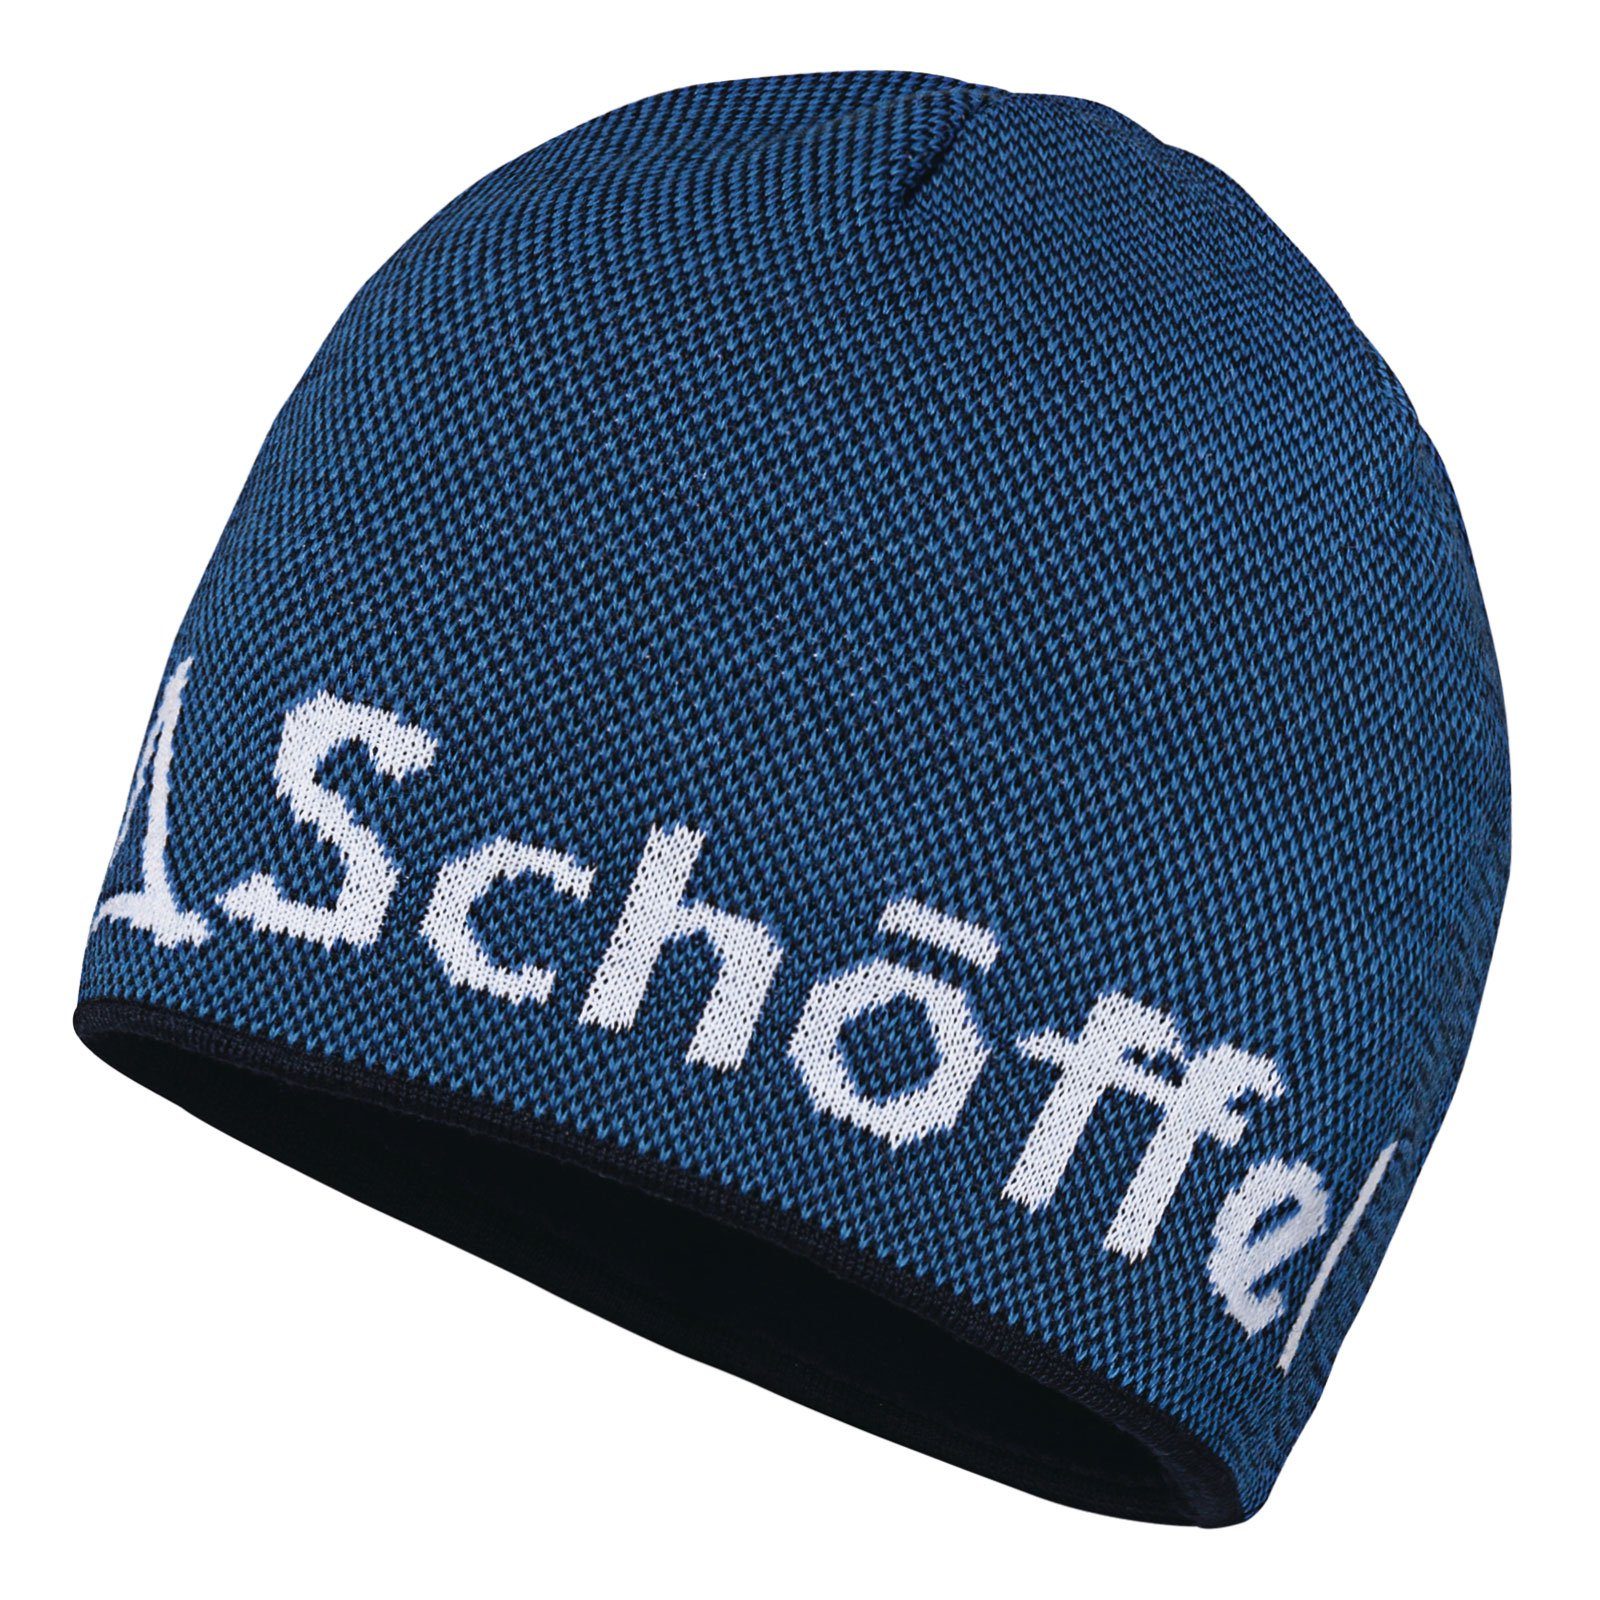 Schoeffel blue eingestricktem 8320 Klinovec Strickmütze Schöffel-Logo mit Schöffel Knitted Hat directoire